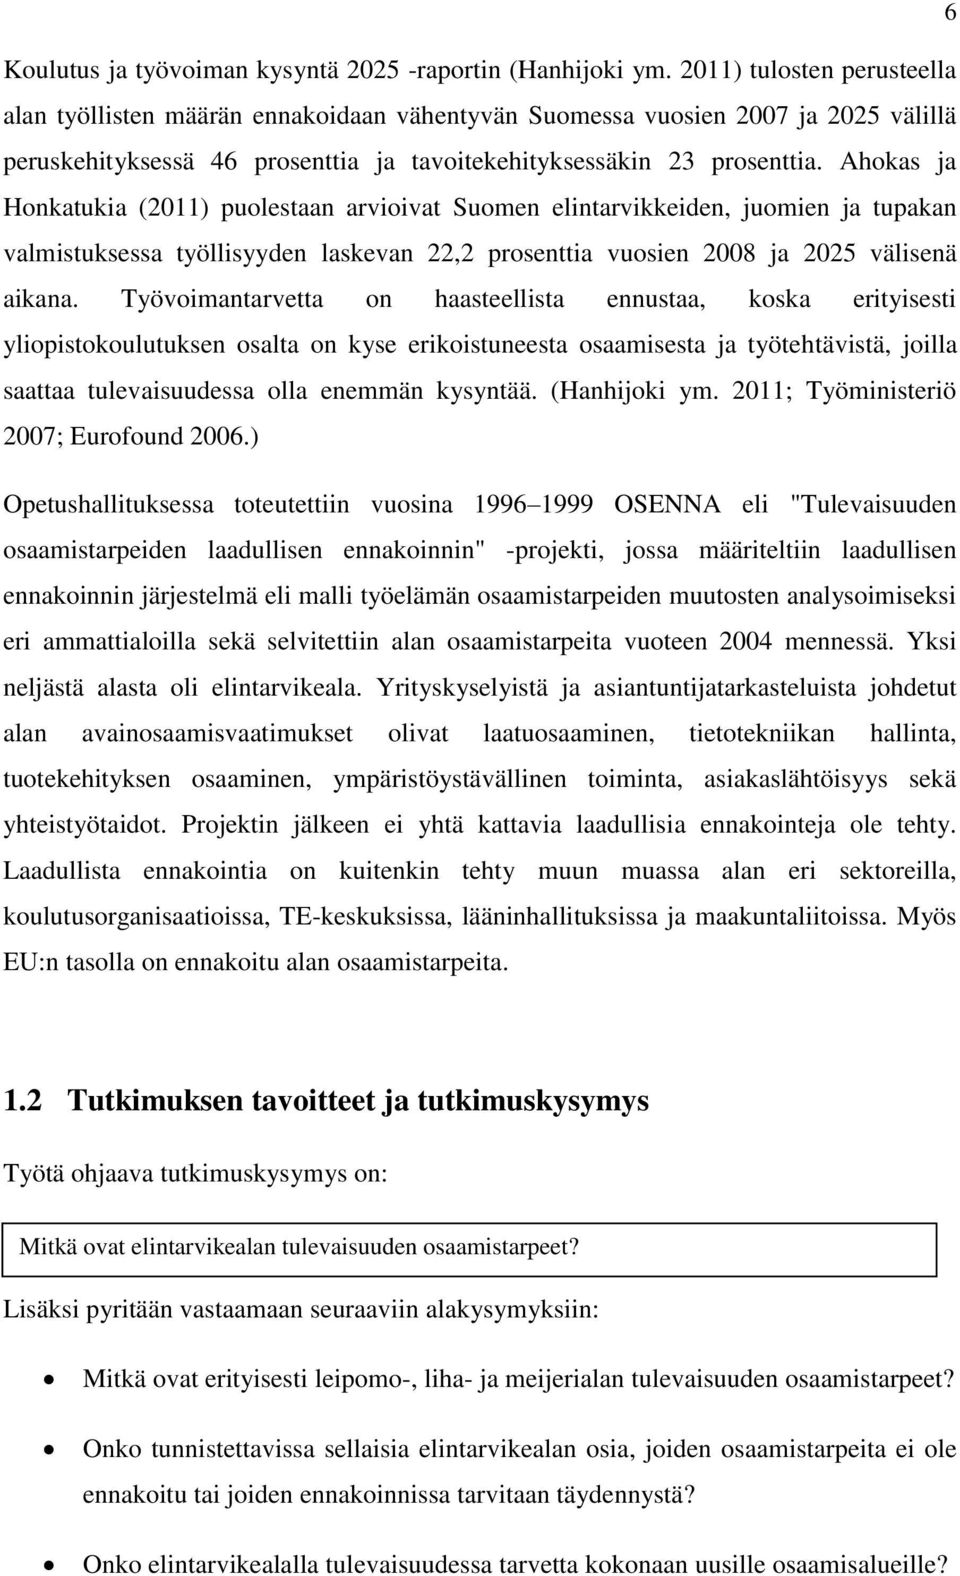 Ahokas ja Honkatukia (2011) puolestaan arvioivat Suomen elintarvikkeiden, juomien ja tupakan valmistuksessa työllisyyden laskevan 22,2 prosenttia vuosien 2008 ja 2025 välisenä aikana.